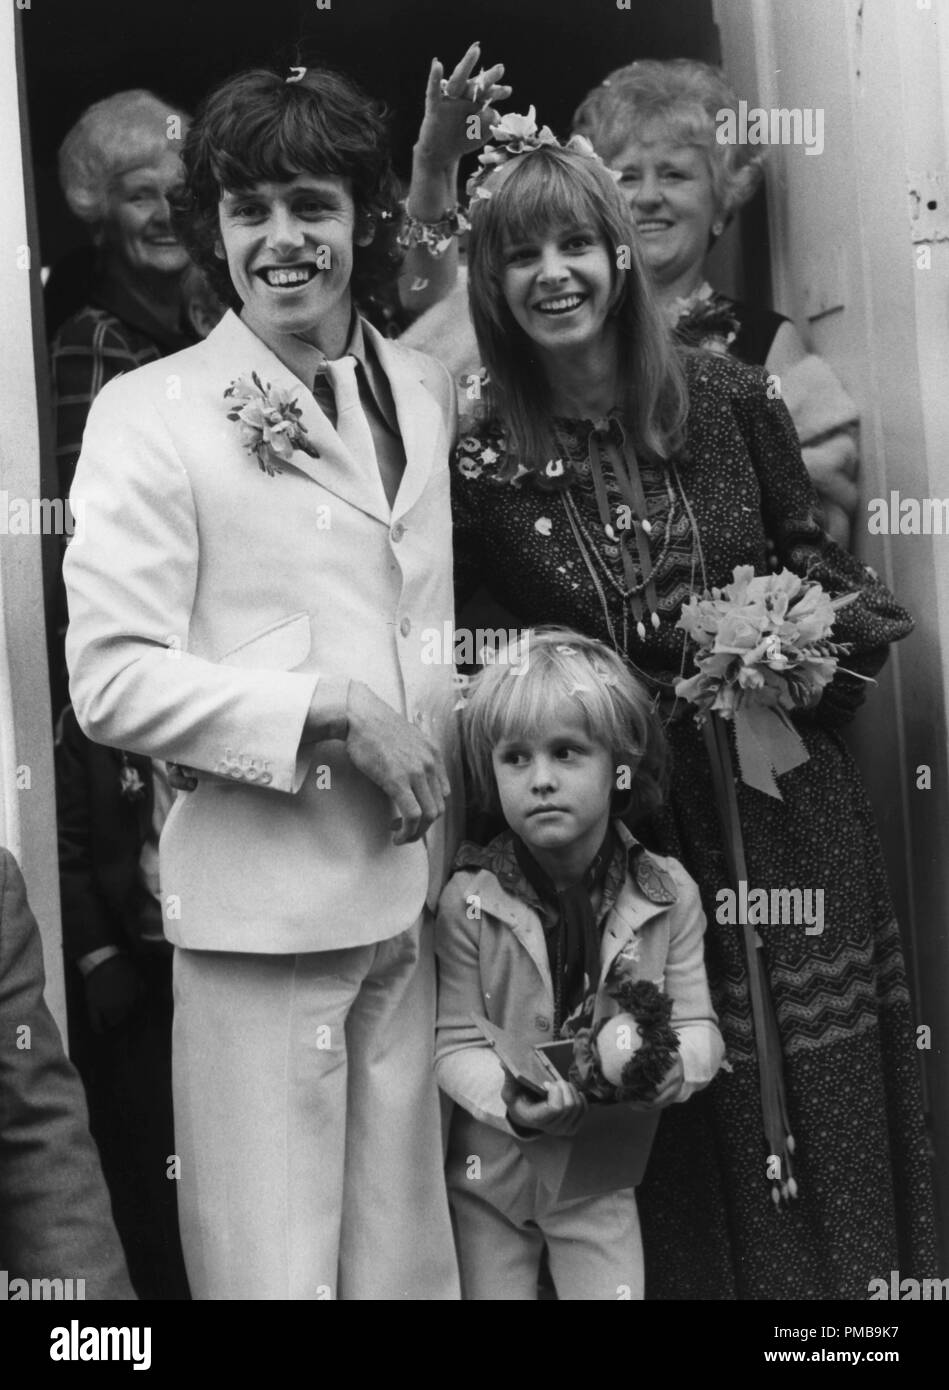 Le chanteur folk Donovan avec son épouse Linda Lawrence et son fils Julian, 1970© CCR /Le Hollywood Archive - Tous droits réservés référence #  32557 844THA Banque D'Images